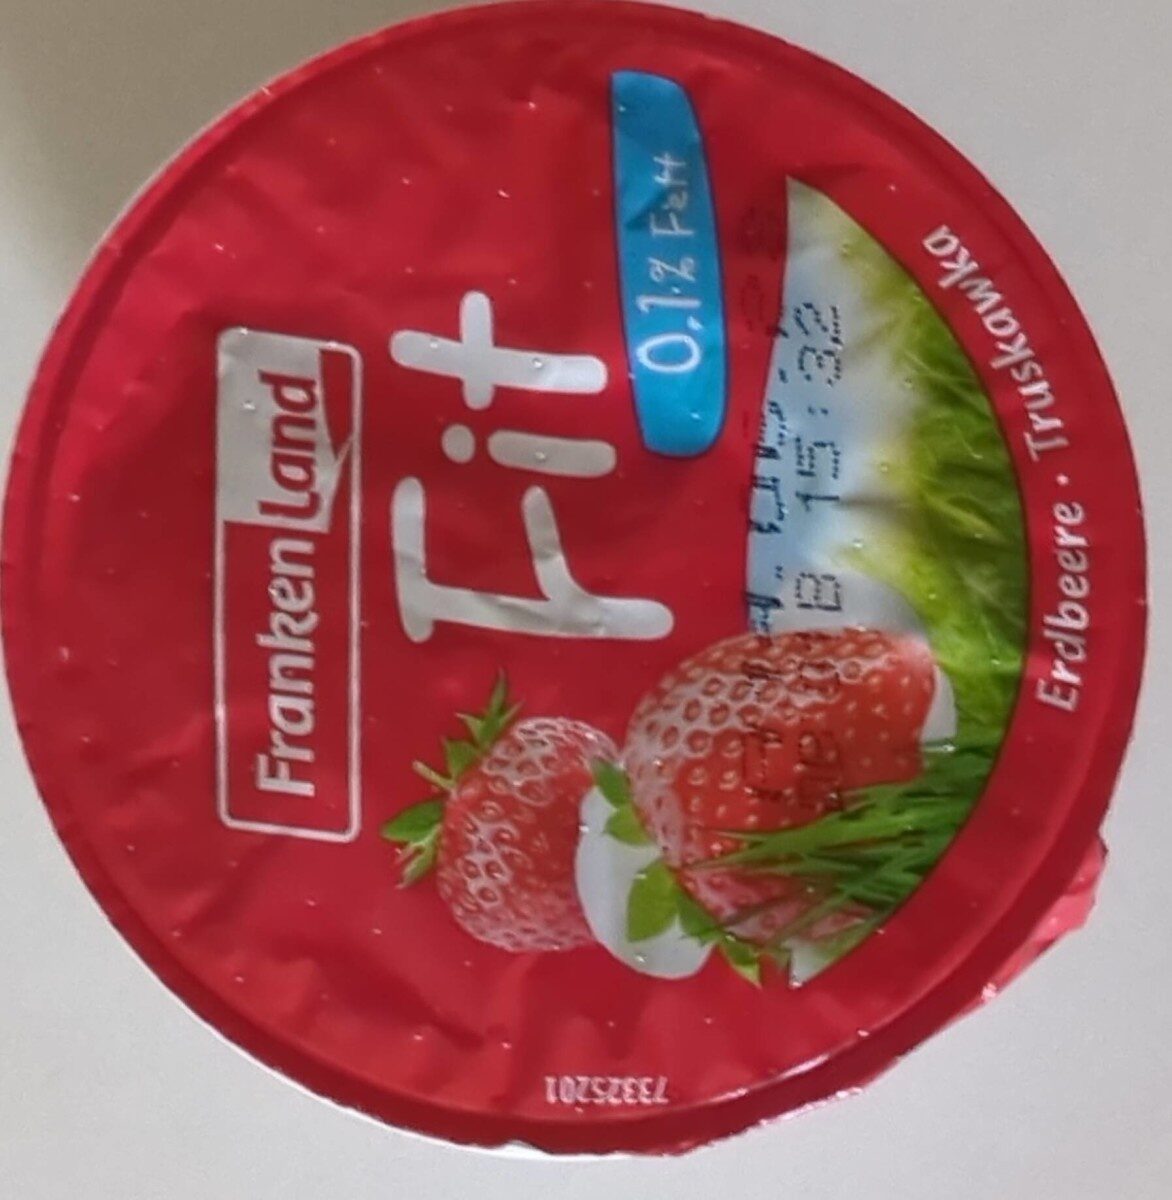 Fit Joghurt - Product - de